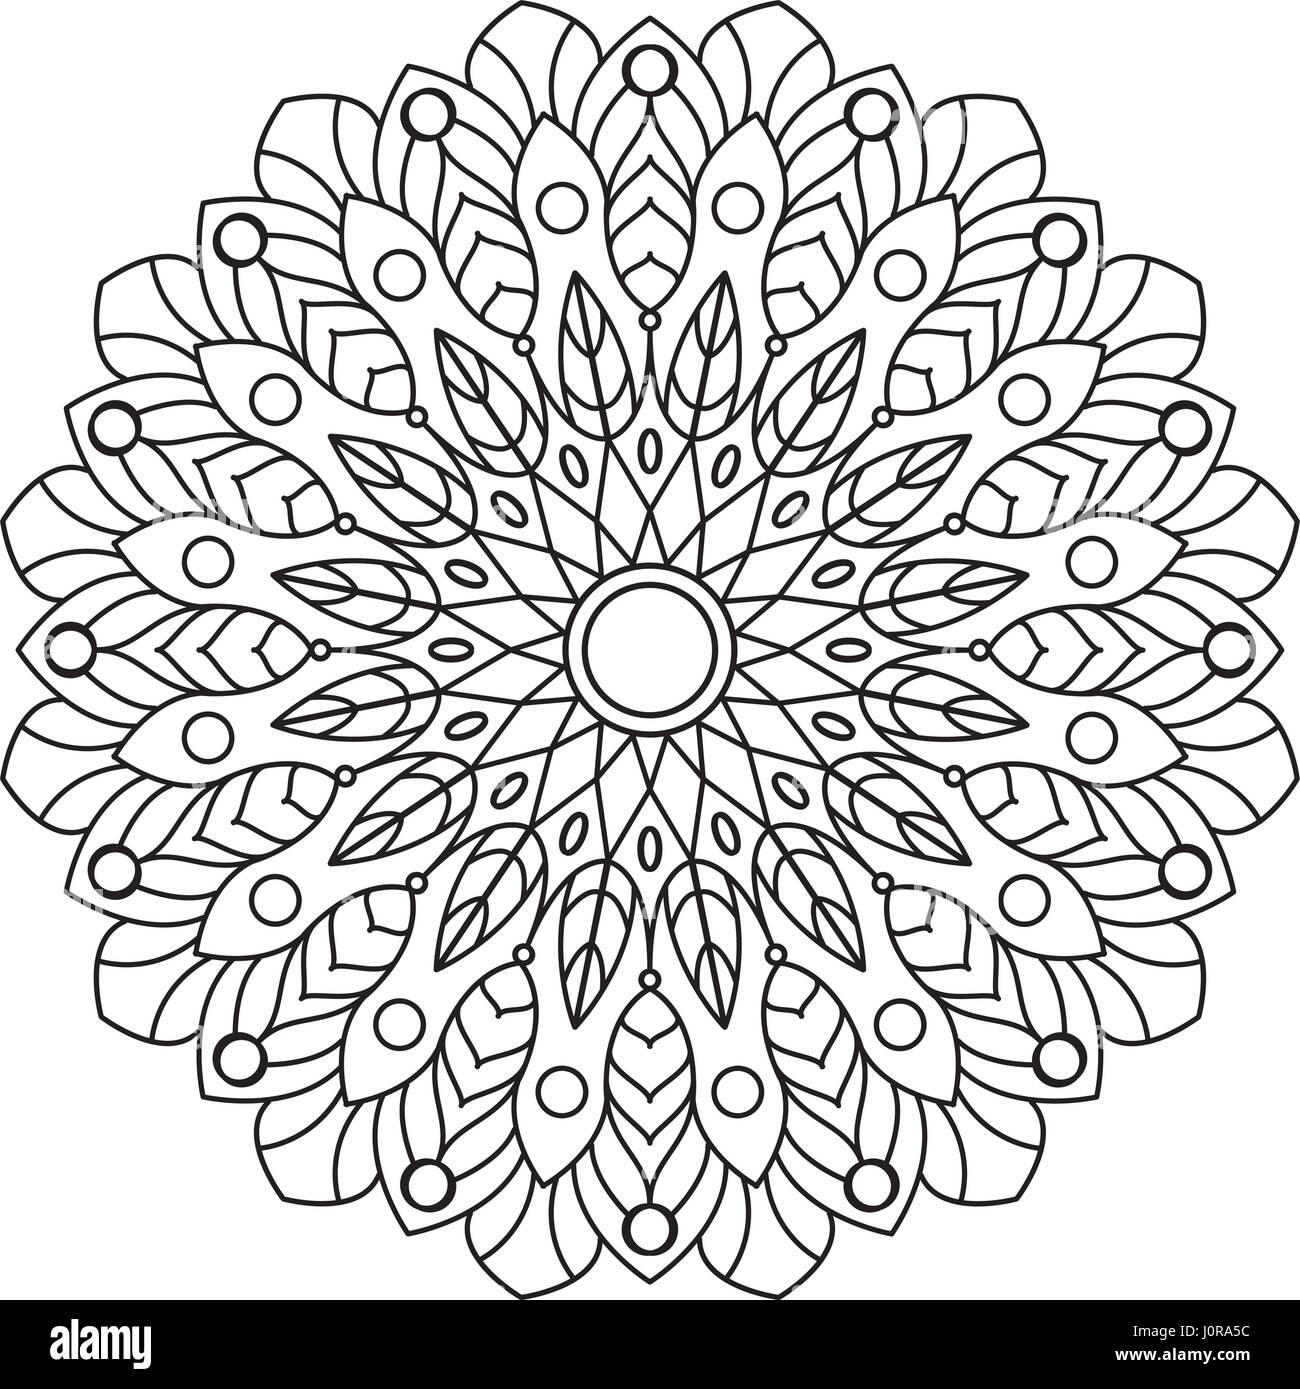 Circle mandala coloring book for adults Royalty Free Vector